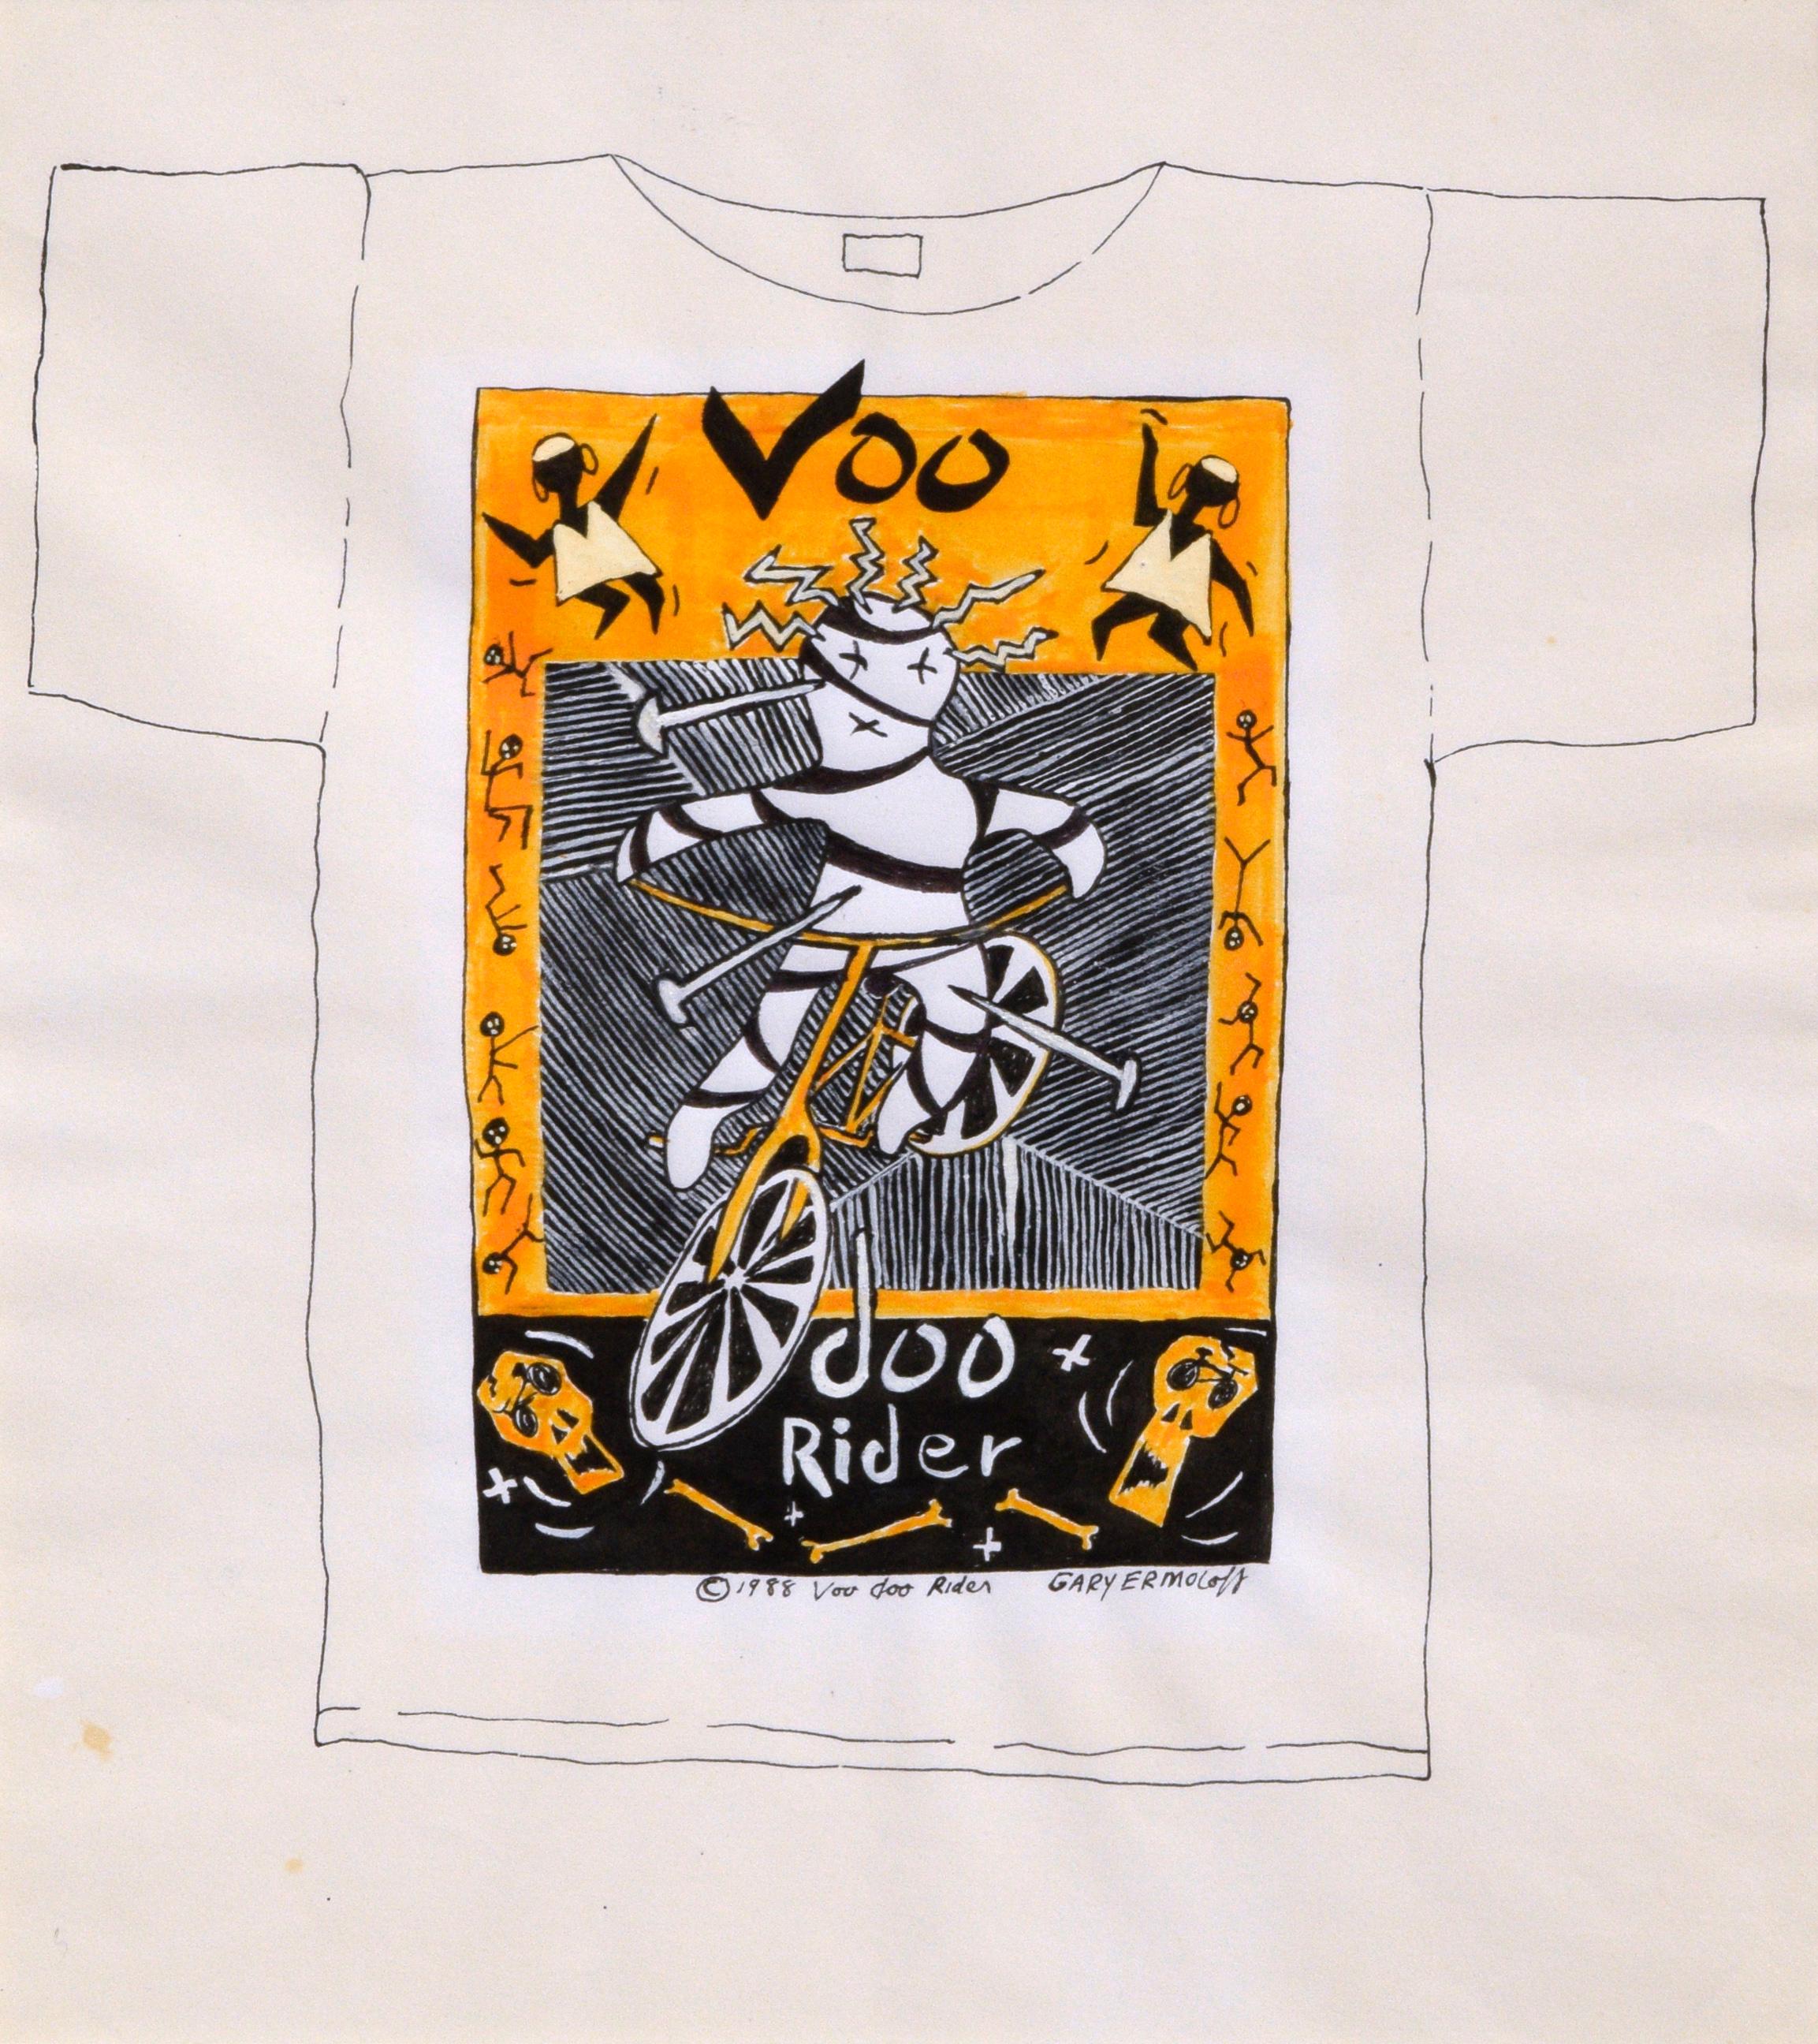 Original Voodoo Rider Original 1980er T-Shirt Design Zeichnung  – Painting von Gary Ermoloff